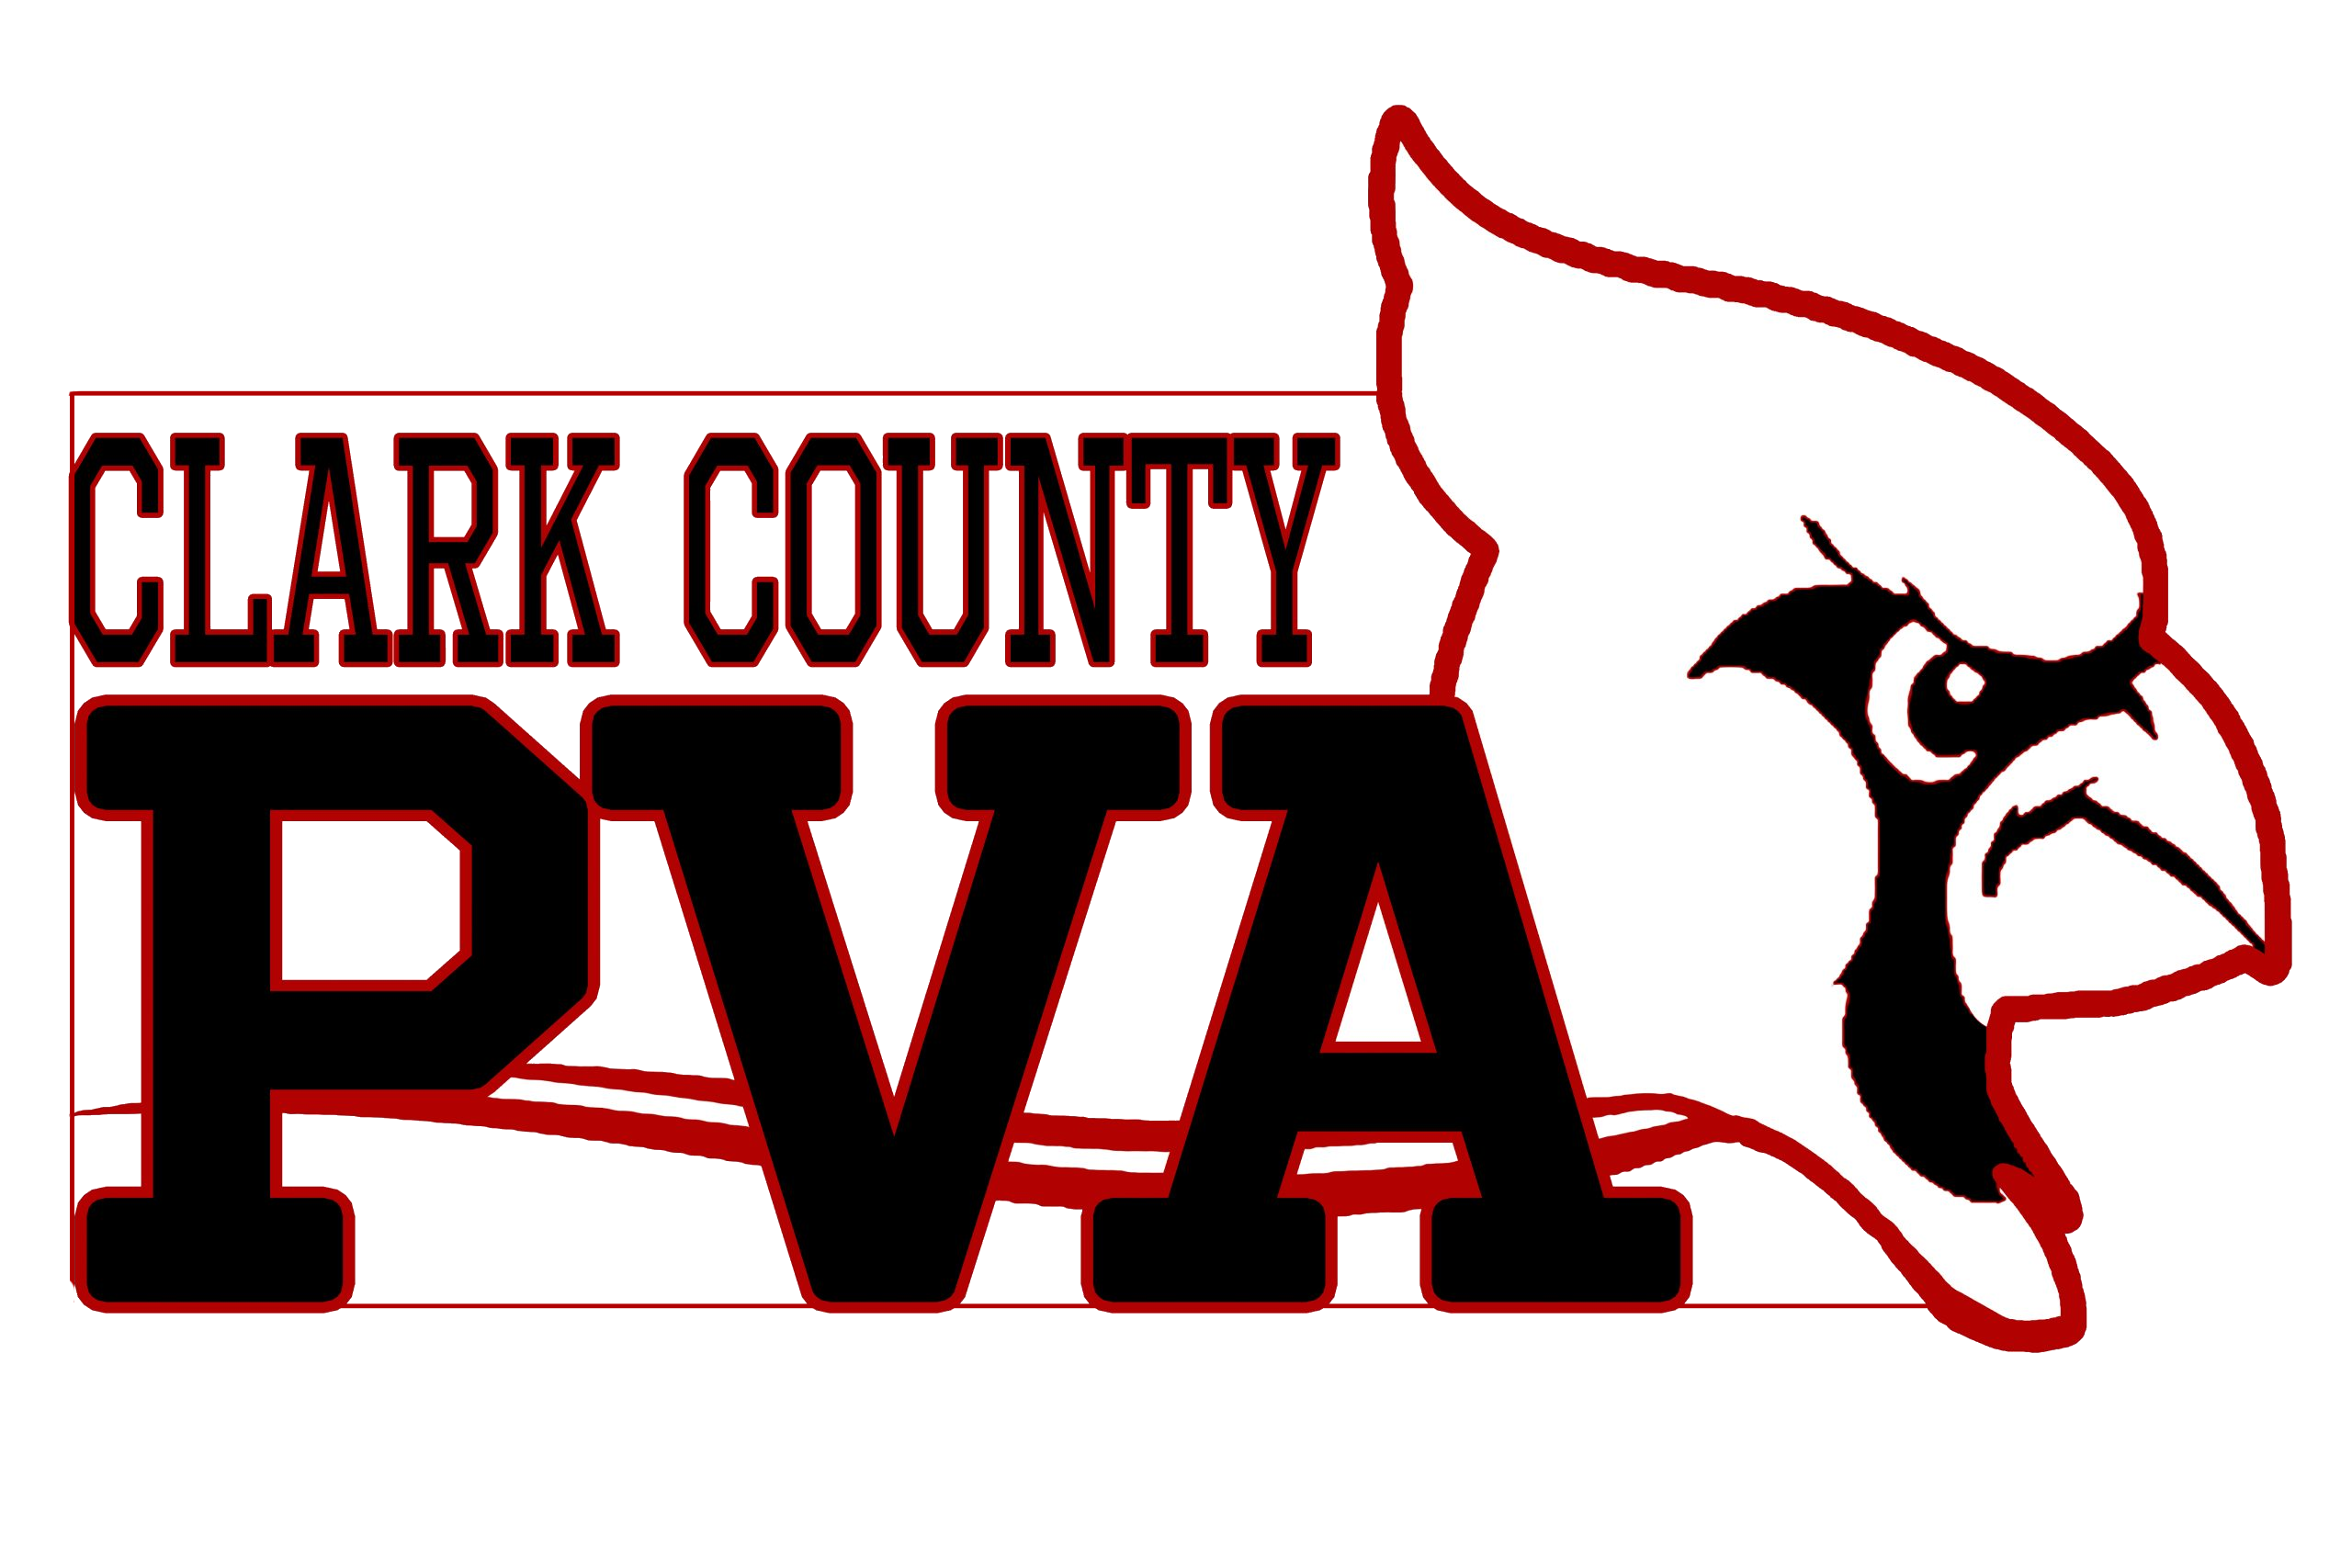 Clark County PVA